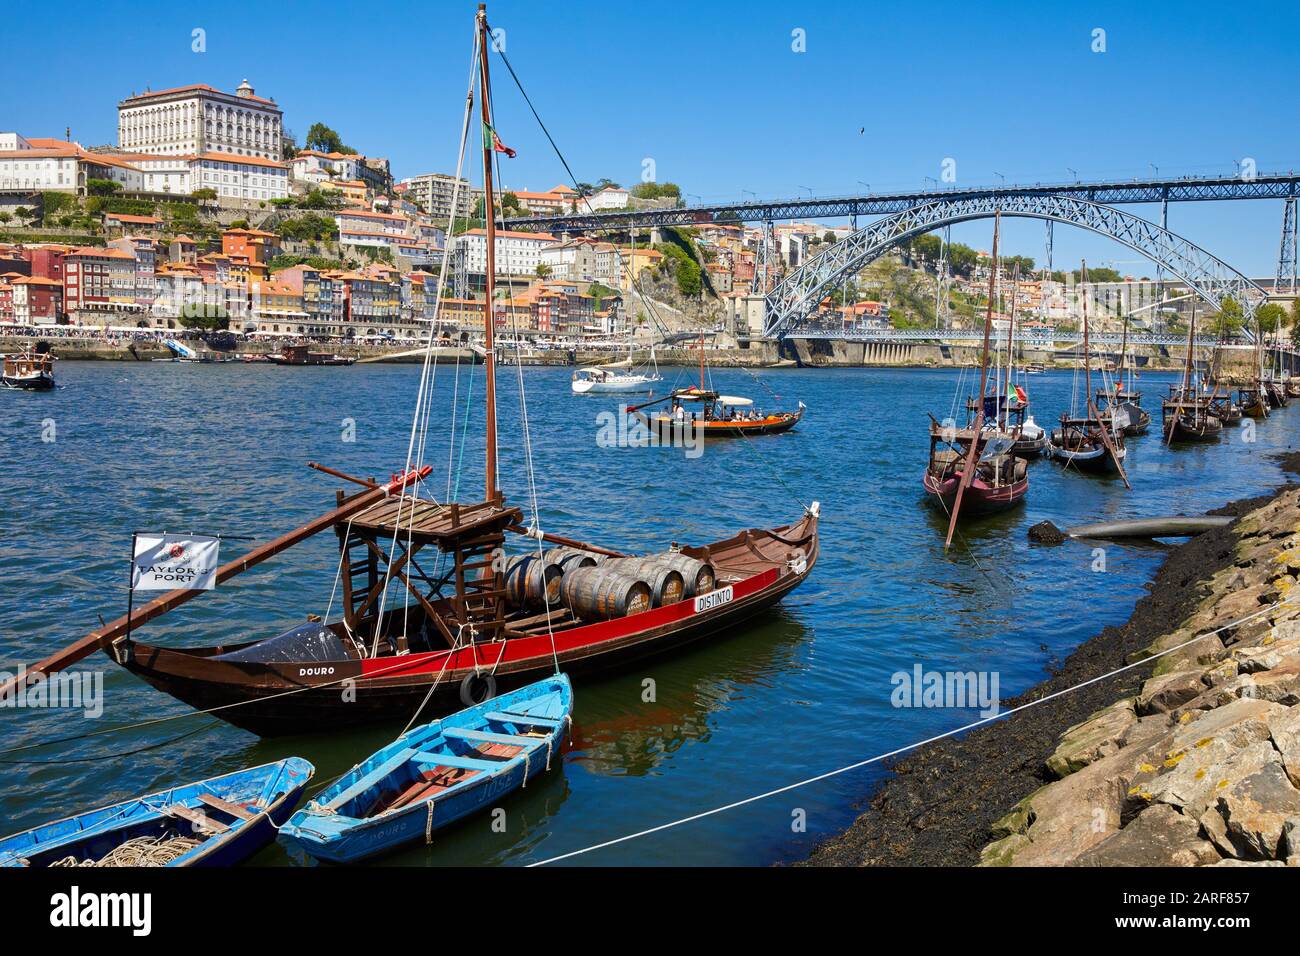 Traditional Portuguese wooden cargo boats transporting port wine, Rio Douro river, Vila Nova de Gaia, Ponte Dom Luis I bridge, Porto, Portugal Stock Photo